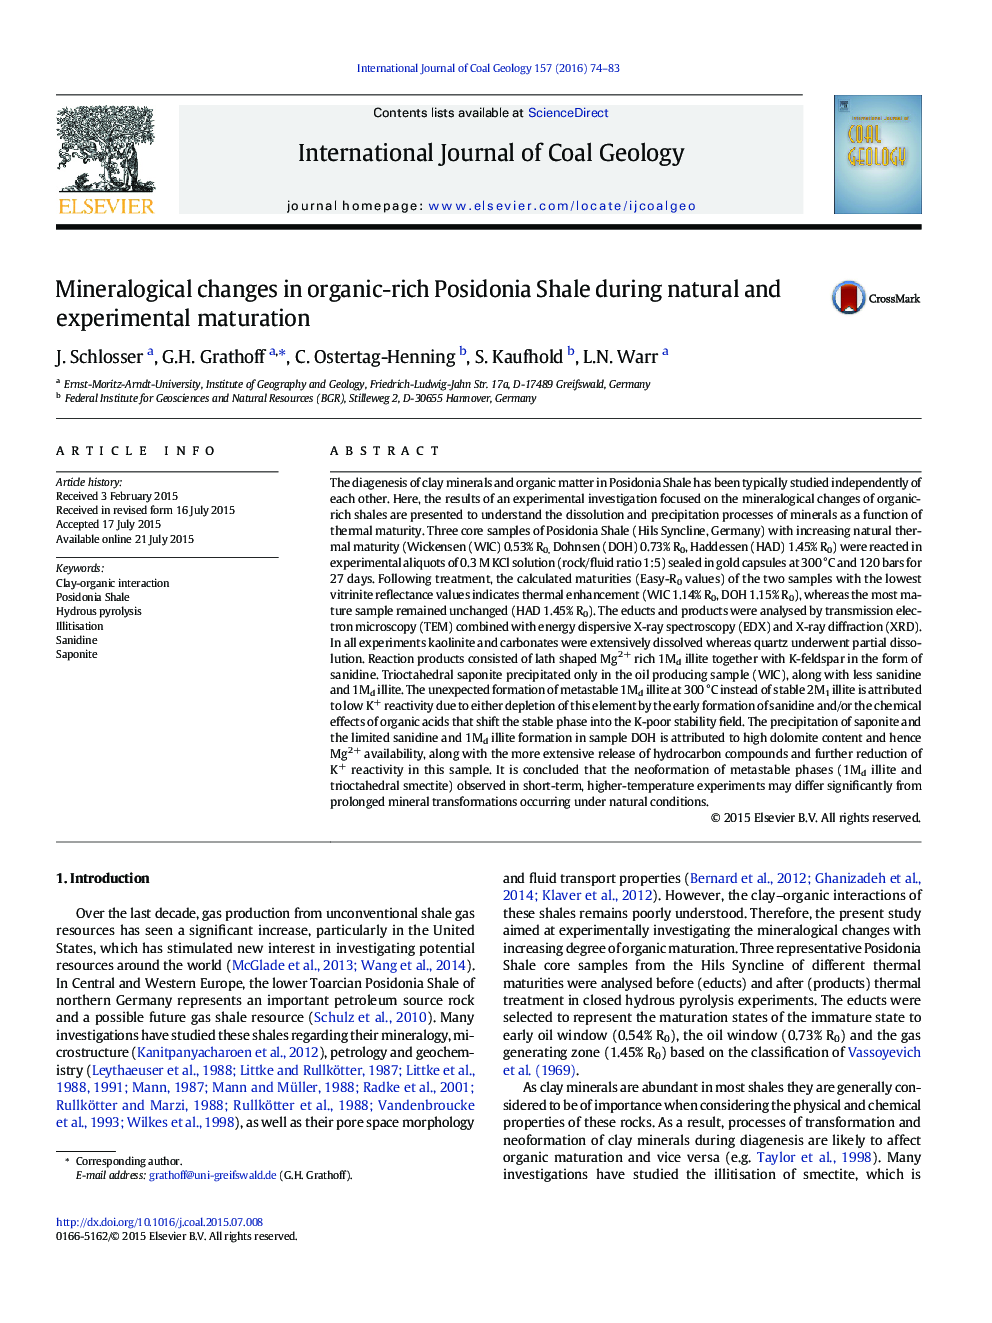 تغییرات کانی شناسی در آلی غنی Posidonia شیل در طی بلوغ طبیعی و تجربی